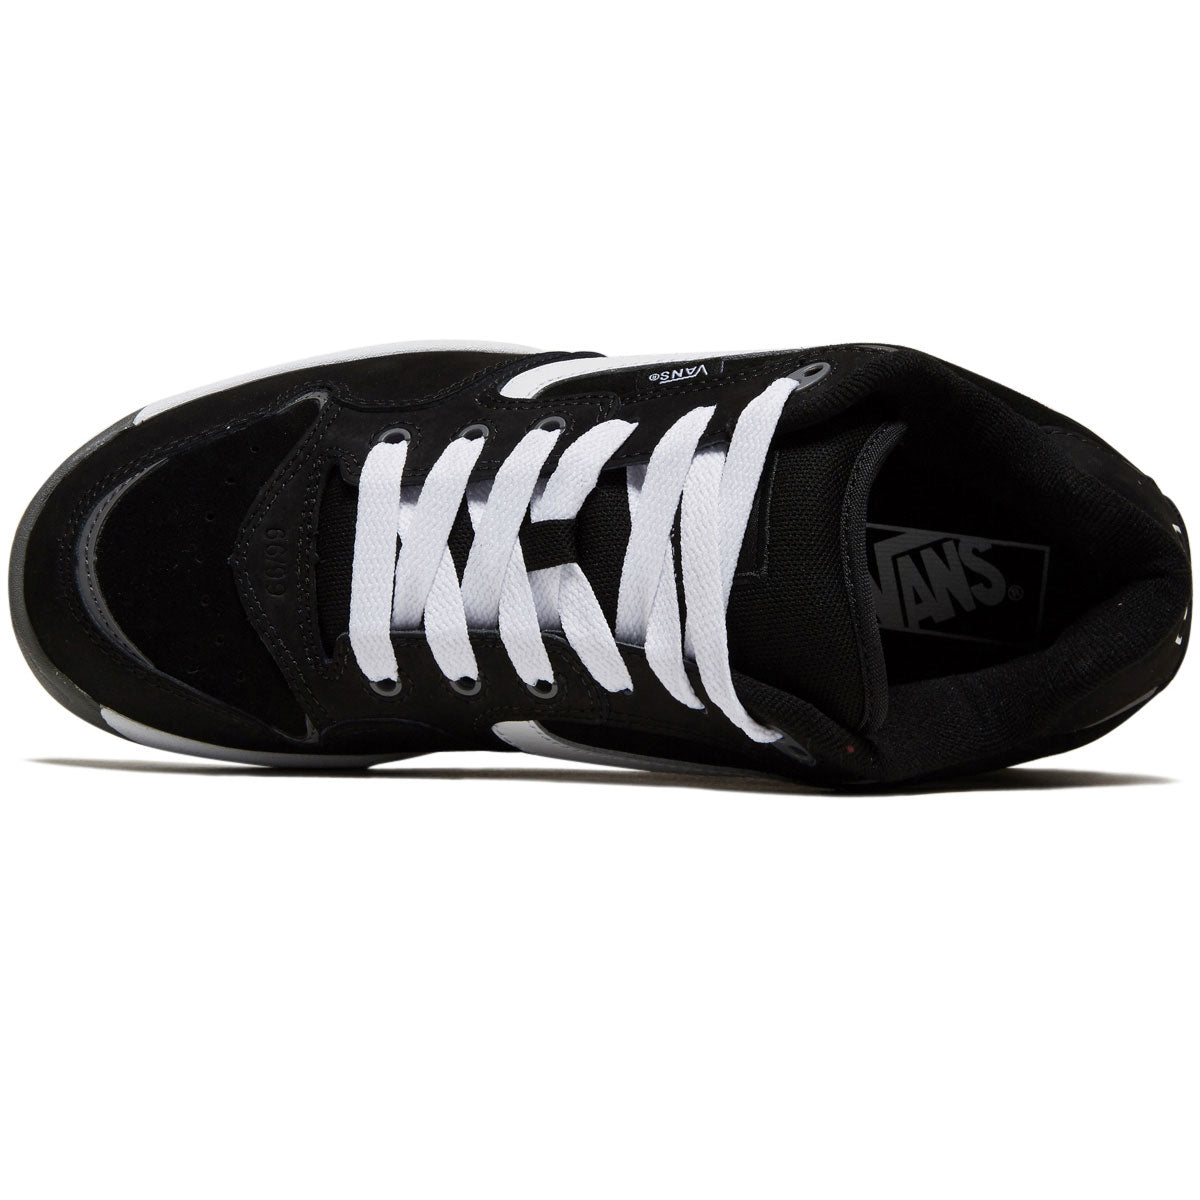 Vans Rowley XLT Shoes - Black/White image 3